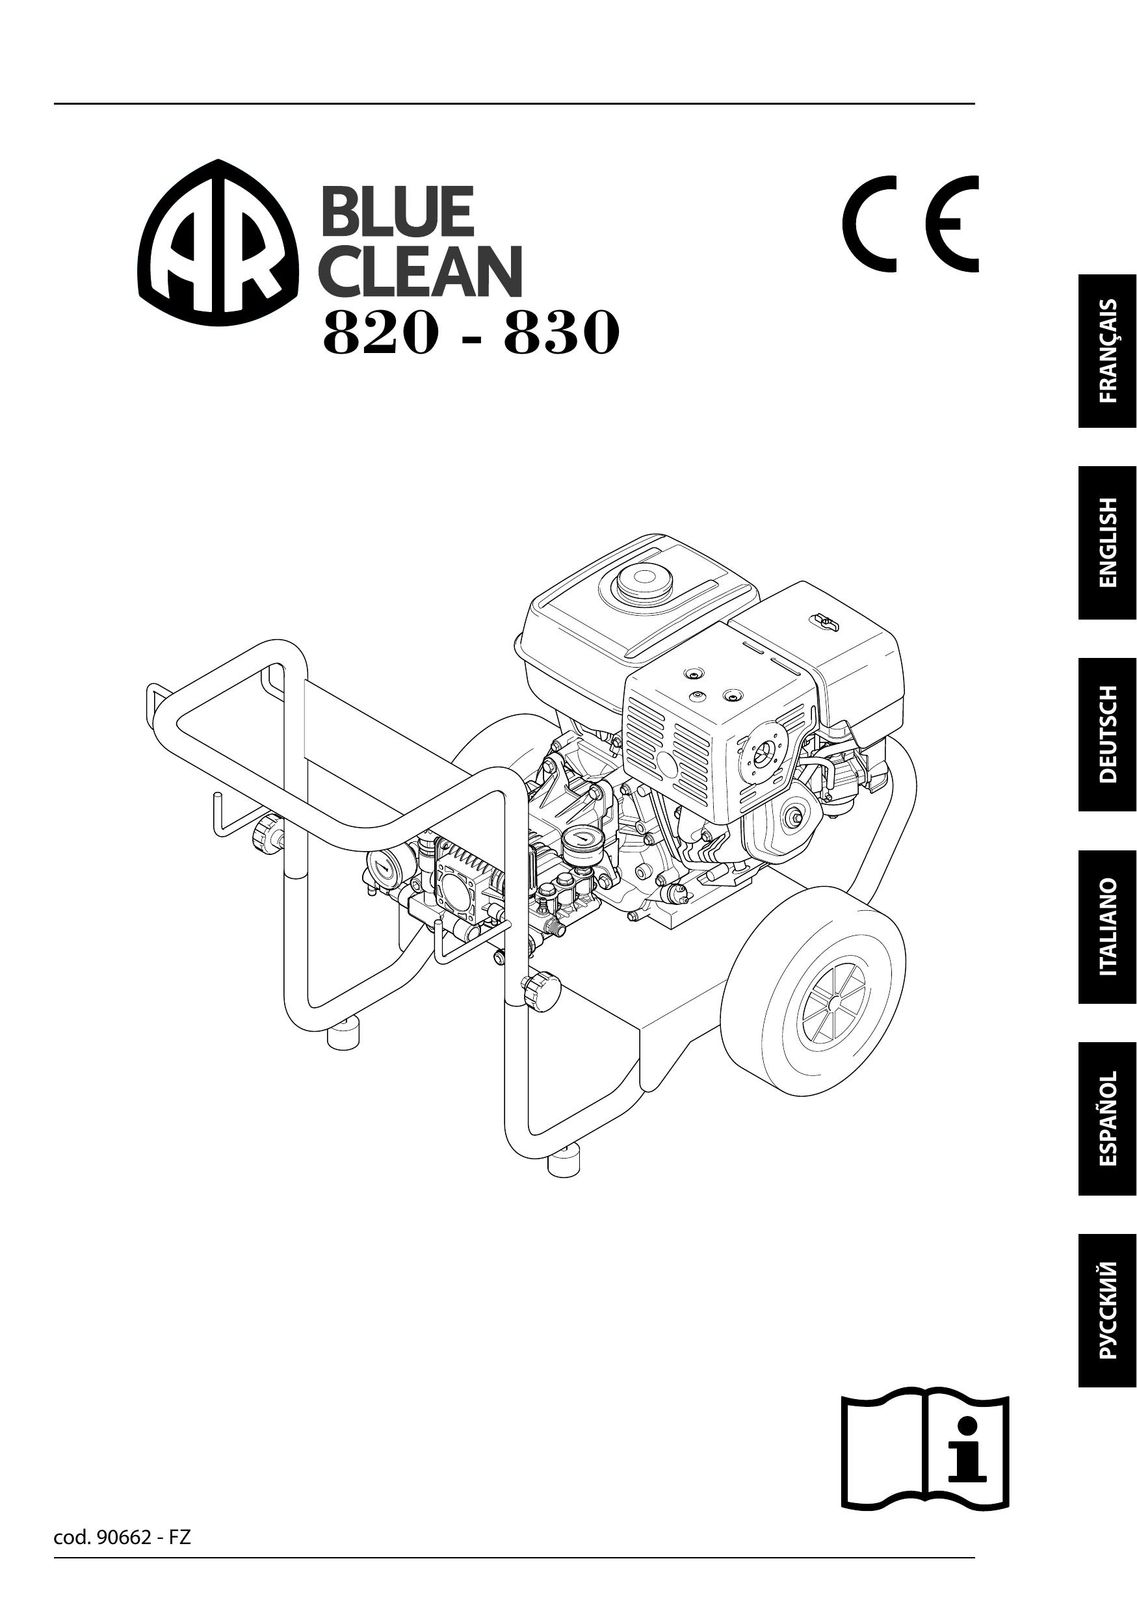 Annovi Reverberi 820 - 830 Plumbing Product User Manual